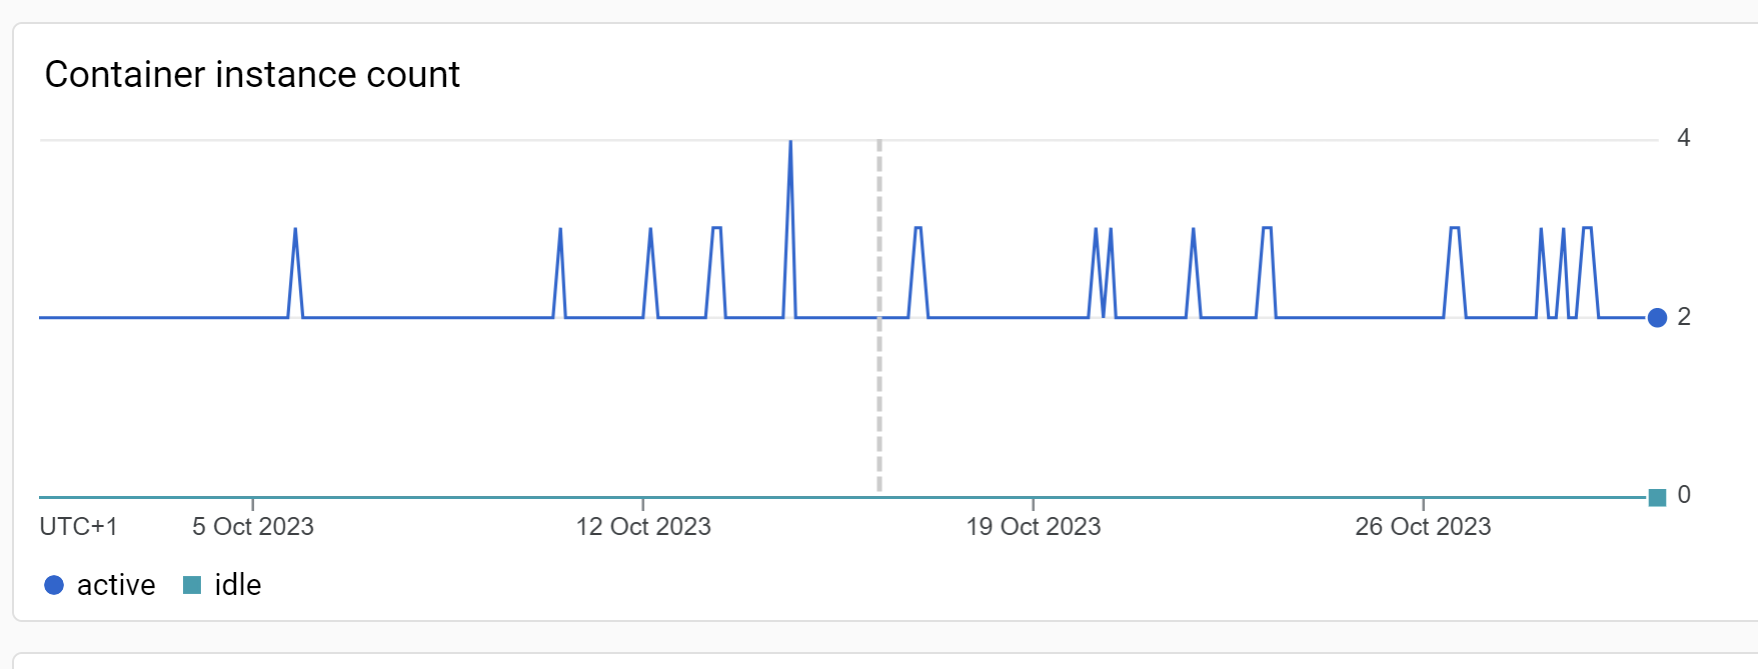 Wykres przedstawiający liczbę aktywnych instancji w kontenerze Google Cloud Run, gdzie działał GTM Server Side. Dane pokazują, że w październiku 2023 roku maksymalna liczba aktywnych instancji wynosiła 4 i została osiągnięta tylko raz.